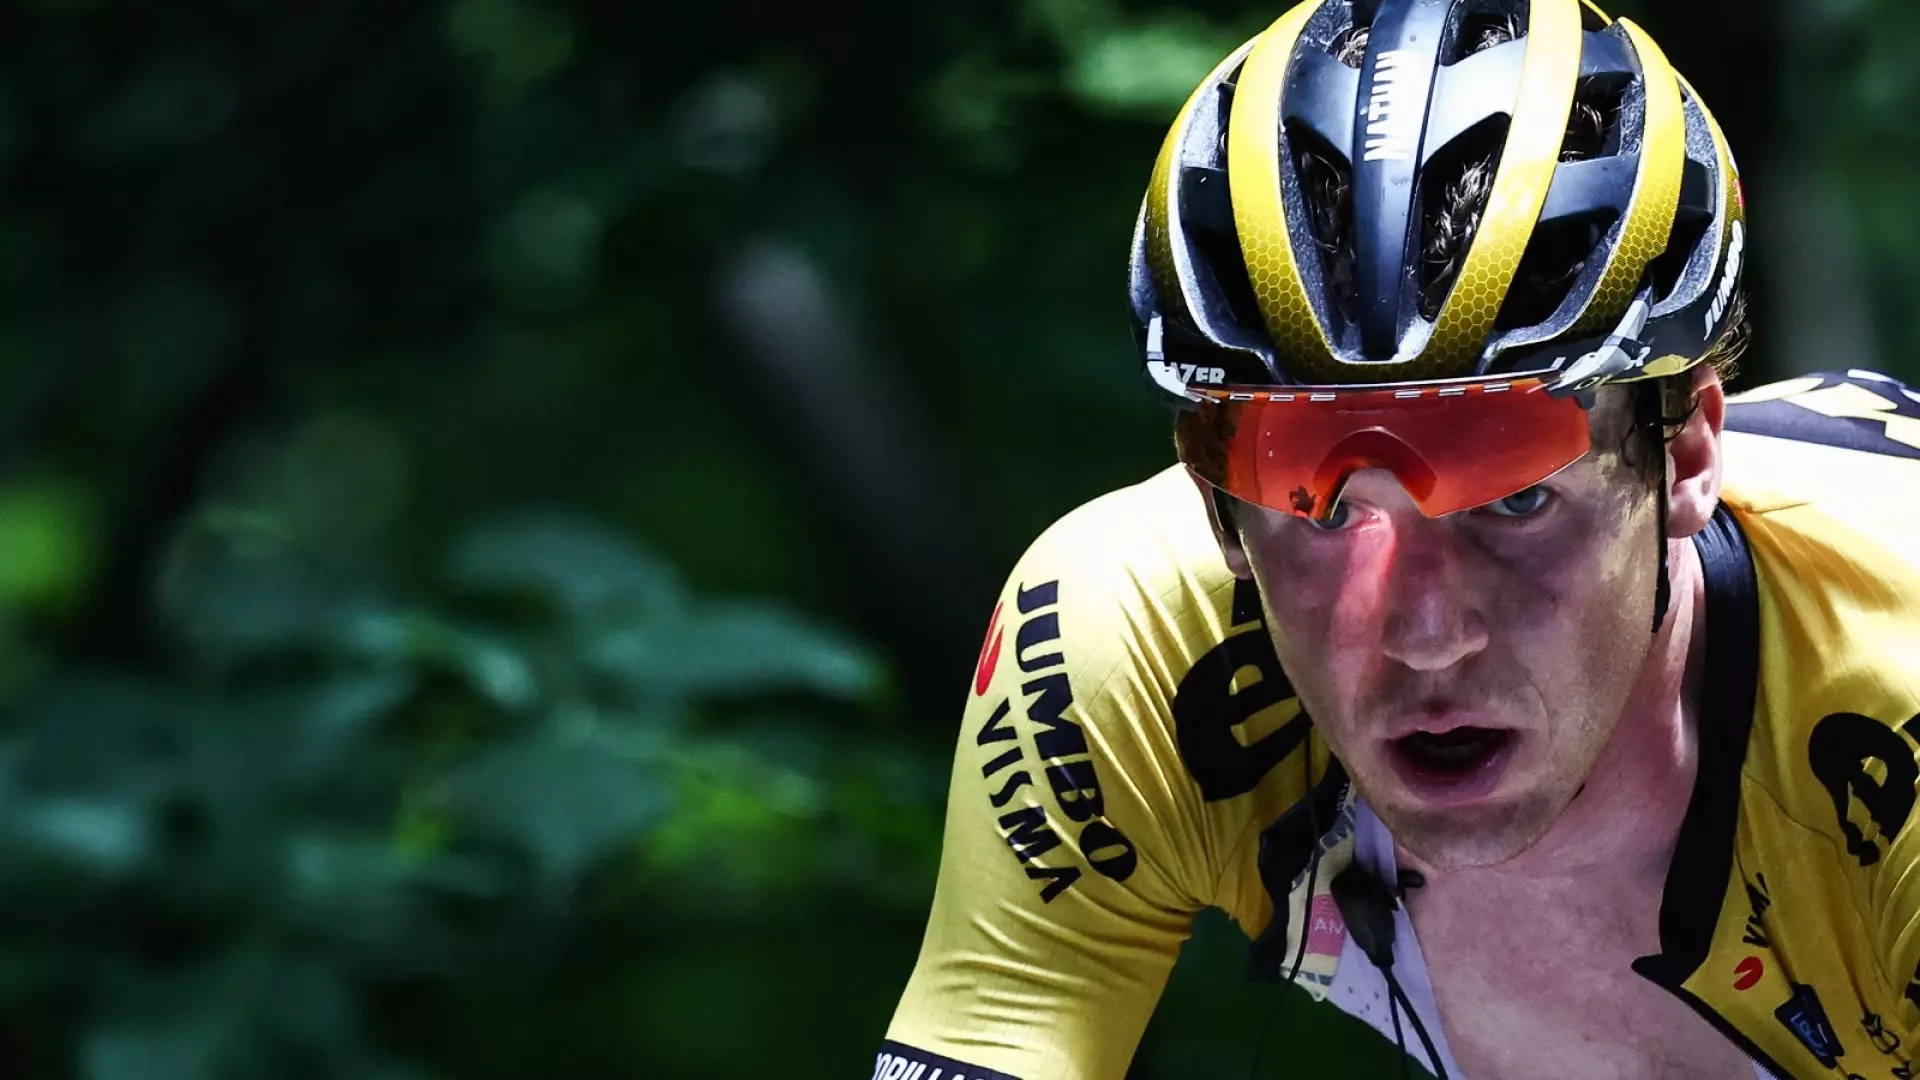 Ciclismo, Nathan Van Hooydonck ricoverato in gravissime condizioni